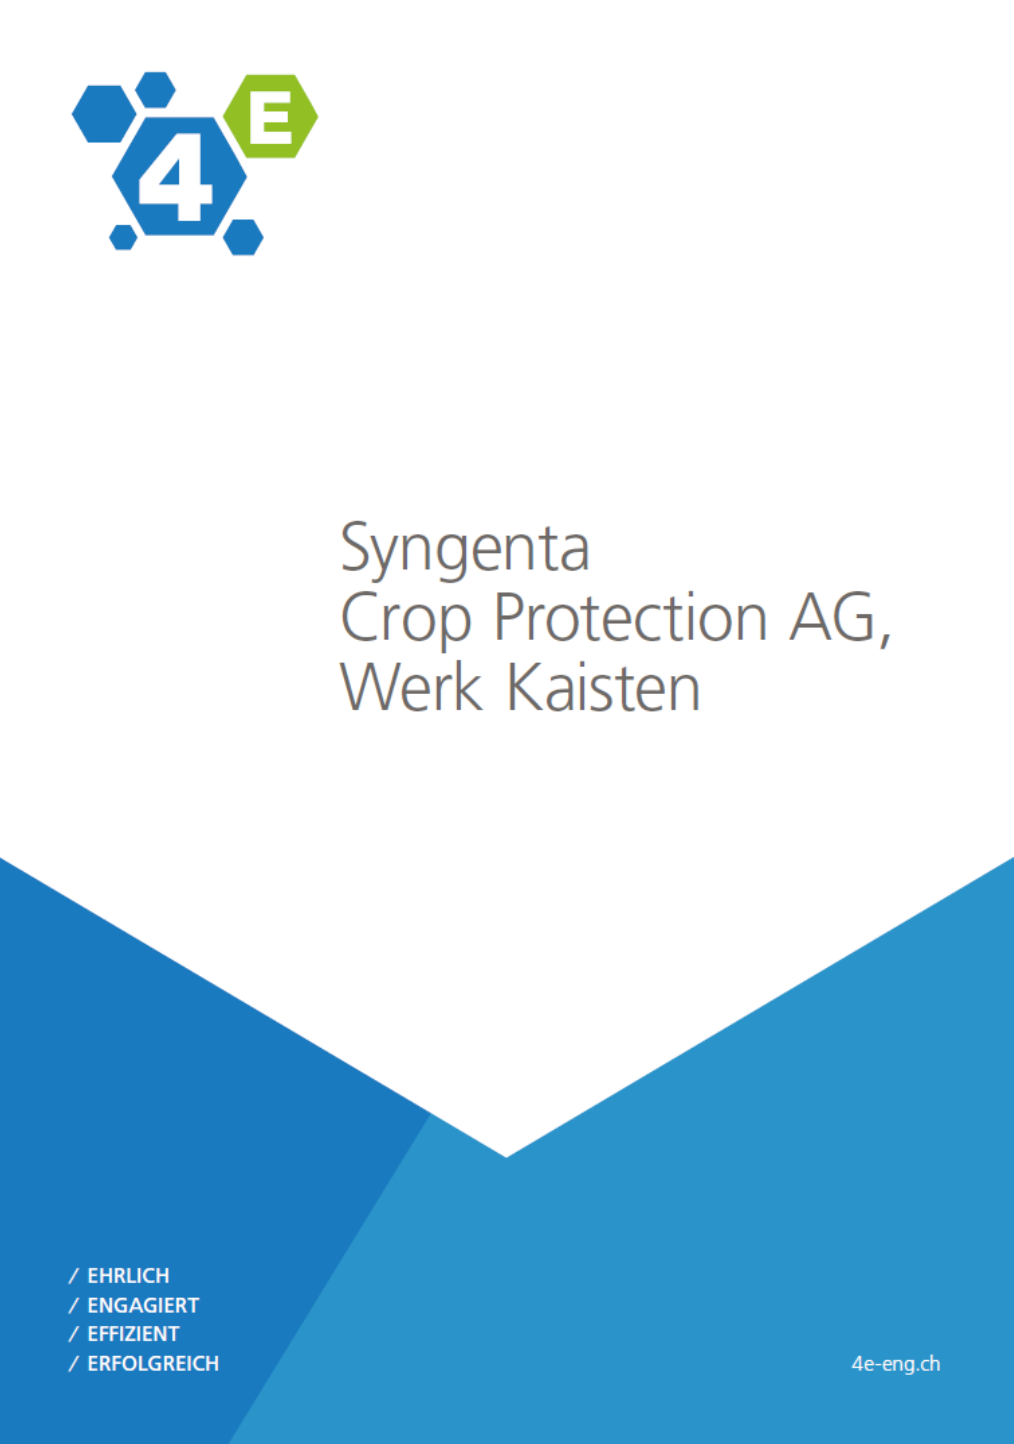 Factsheet: Syngenta Crop Protection AG, Werk Kaisten - Mondfähre